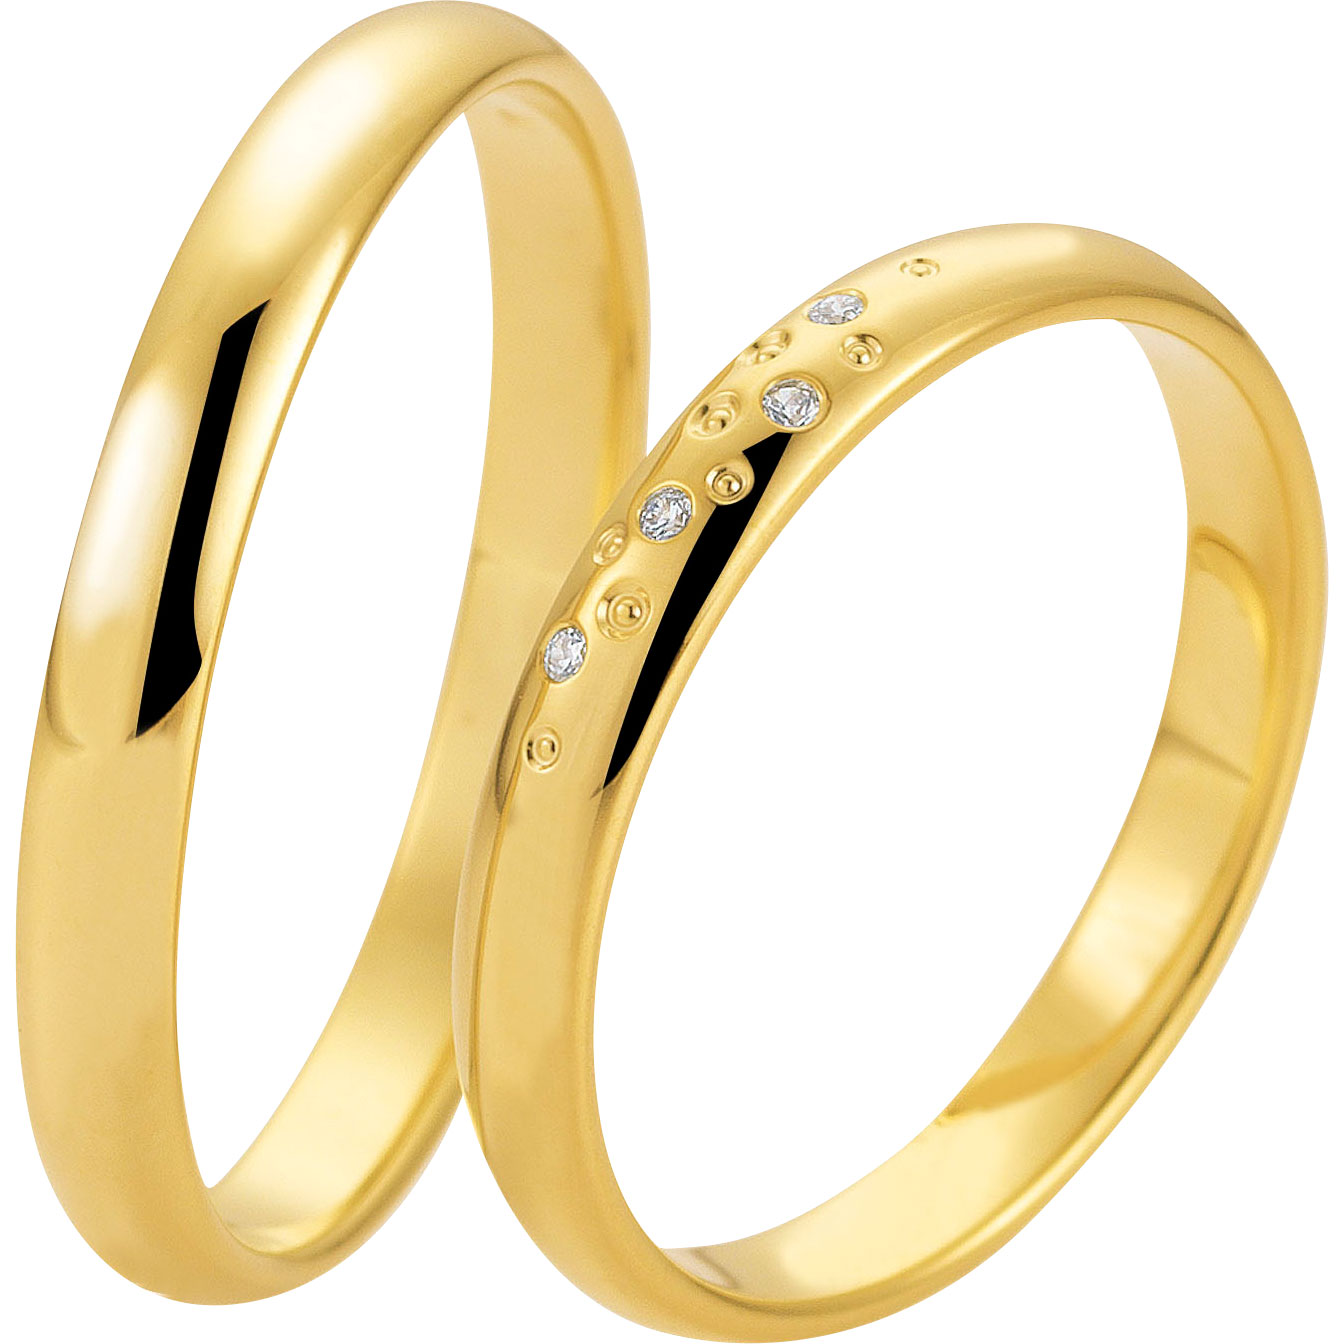 Ottieni il design del tuo anello personalizzato e l'anello in argento placcato oro 18 carati su misura